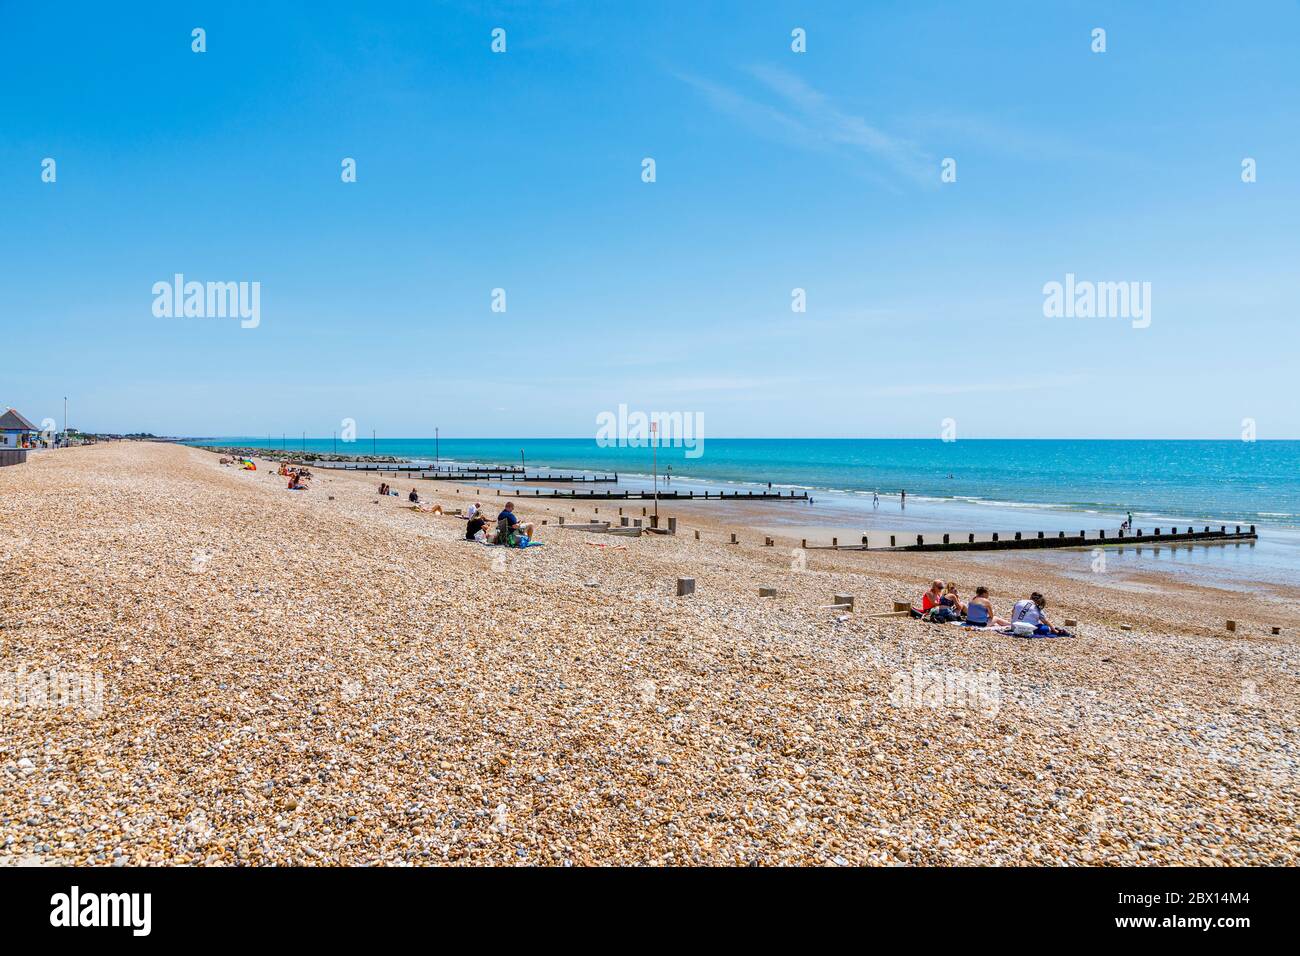 La plage de galets à Bognor Regis, une ville balnéaire de West Sussex, côte sud de l'Angleterre, par une journée ensoleillée avec ciel bleu et mer Banque D'Images